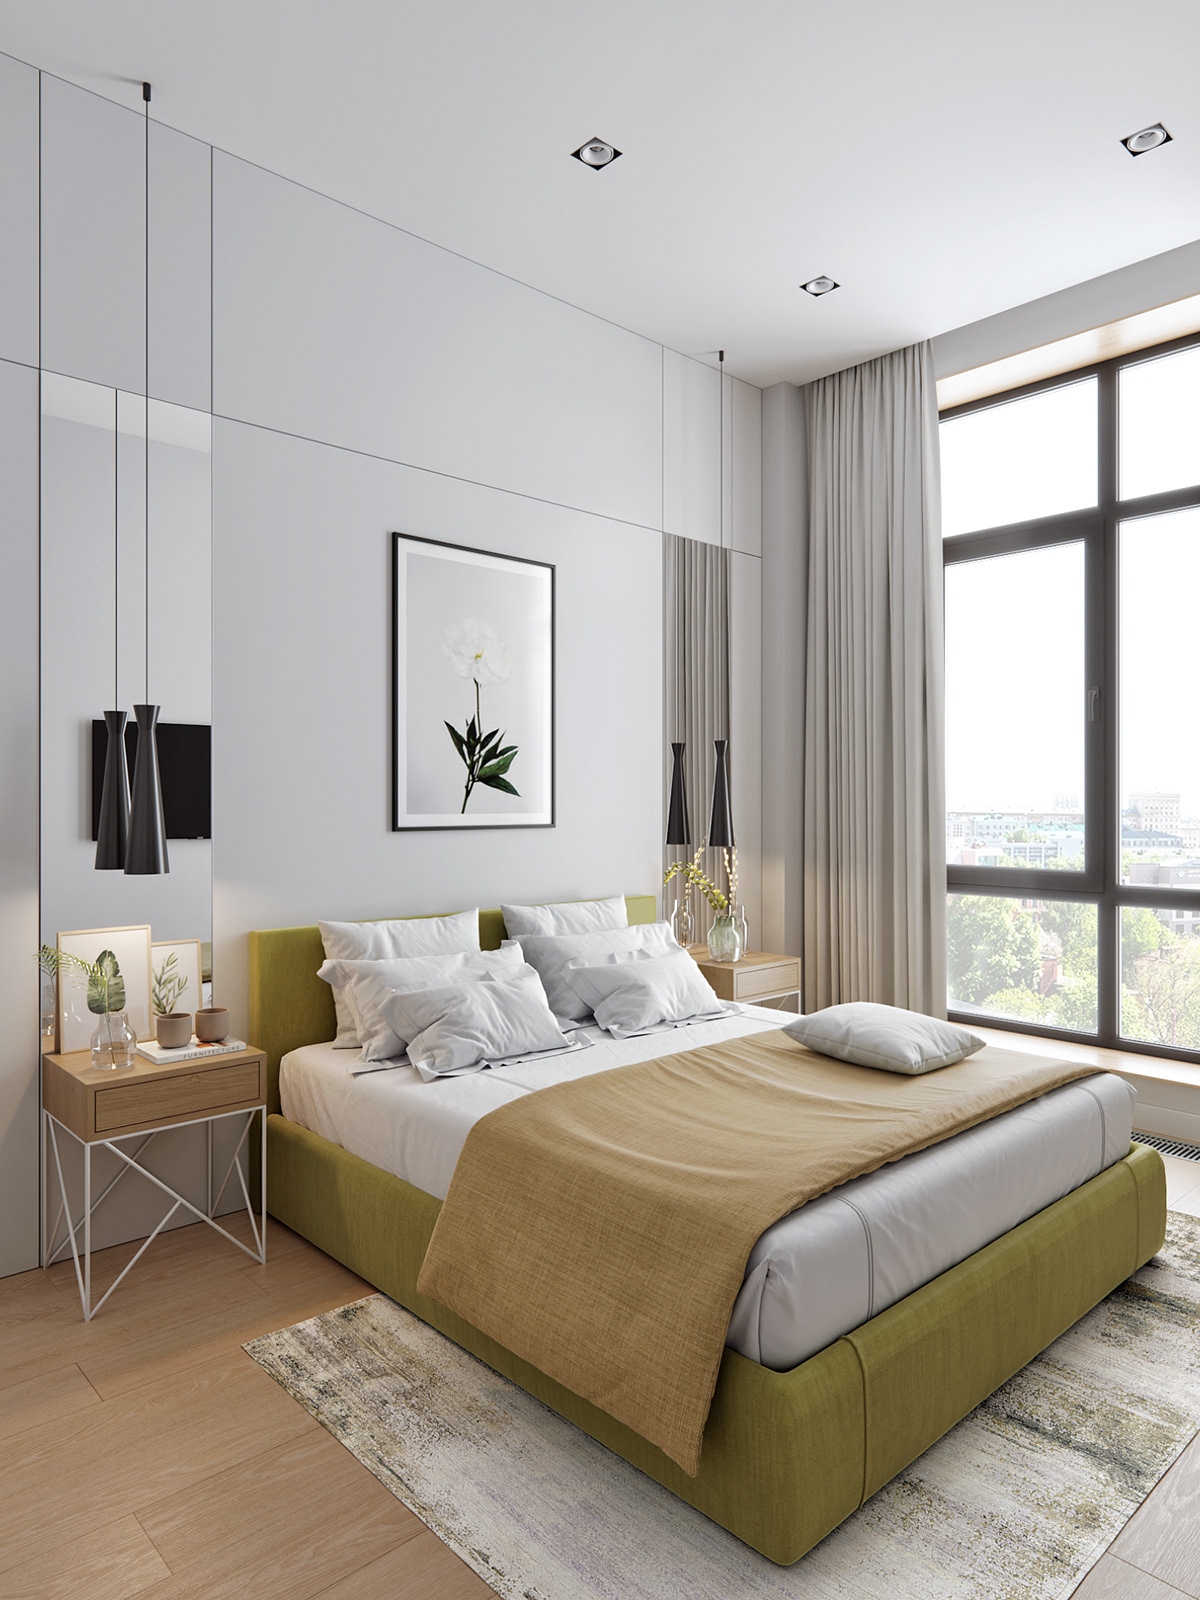  Tất cả các phòng ngủ của căn hộ dự án đều có thiết kế thông thoáng, ánh sáng tự nhiên vào mỗi căn phòng.